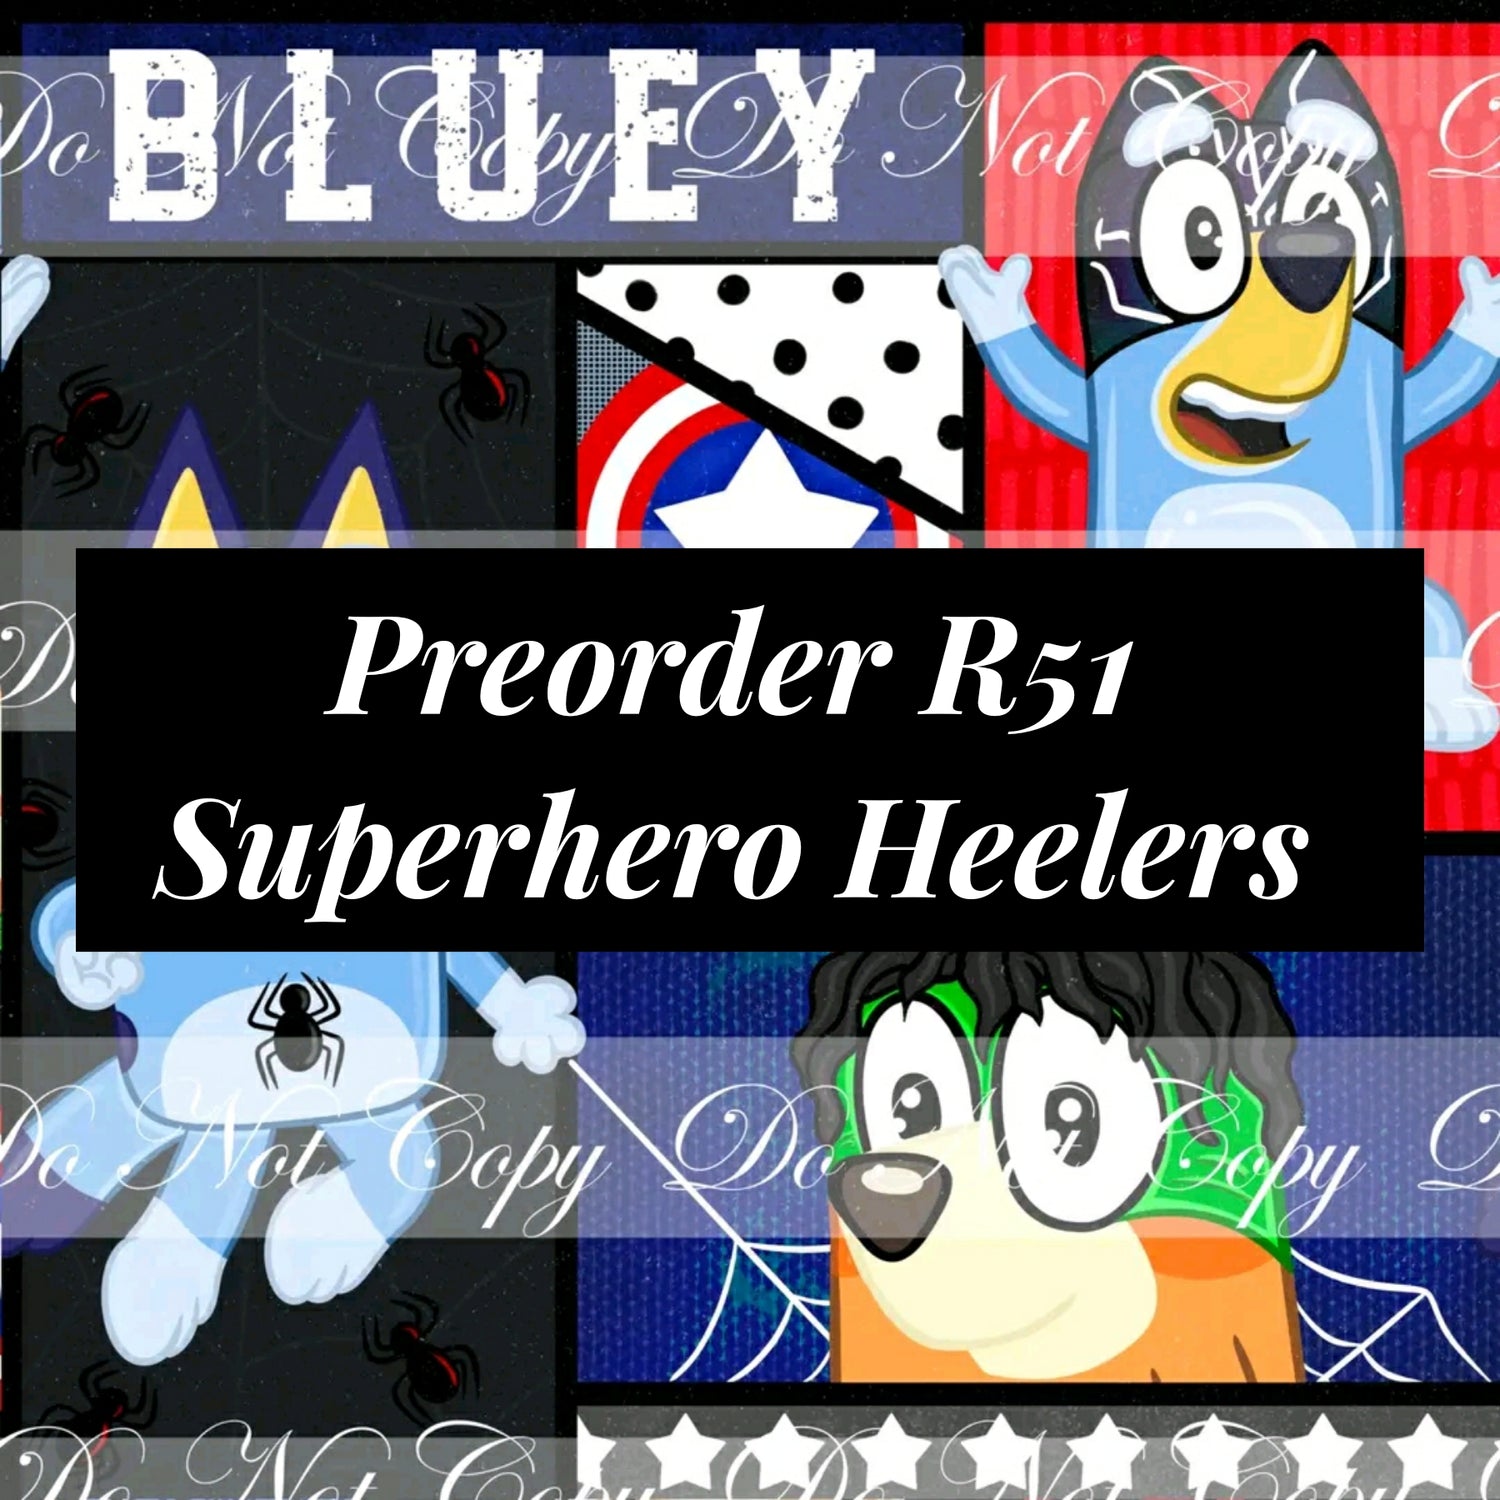 Preorder R51 Superhero Heelers